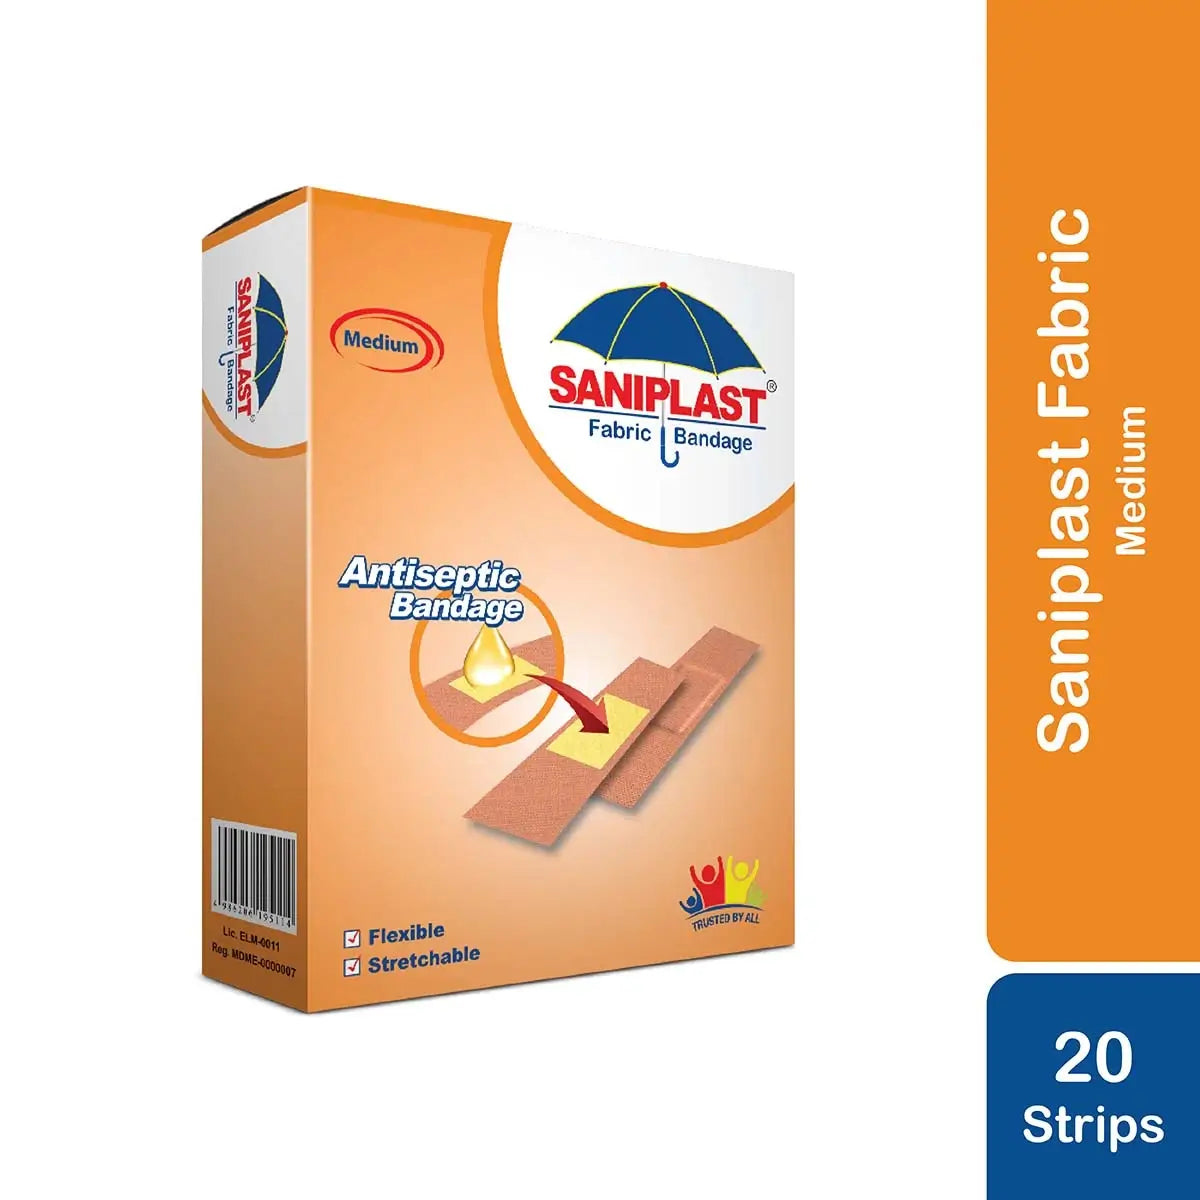 Saniplast Fabric Bandages (20 Strips)